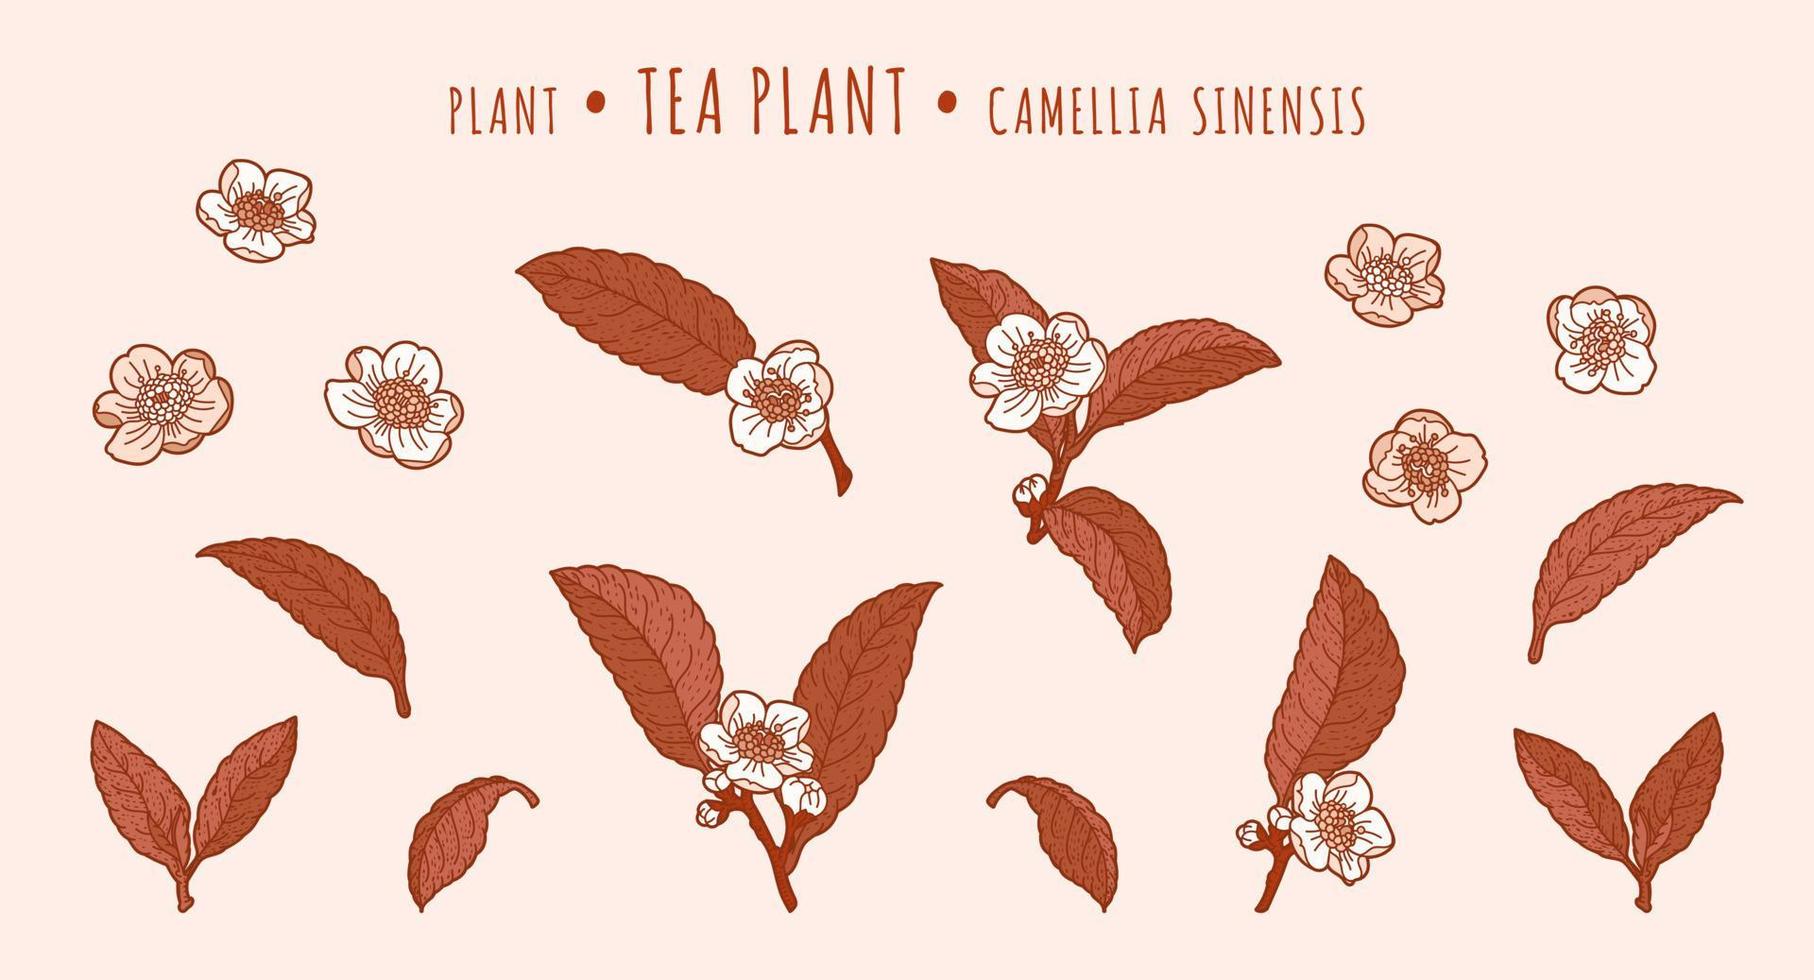 planta de té hojas de camelia y flores en ramas en la técnica dibujada a mano vector